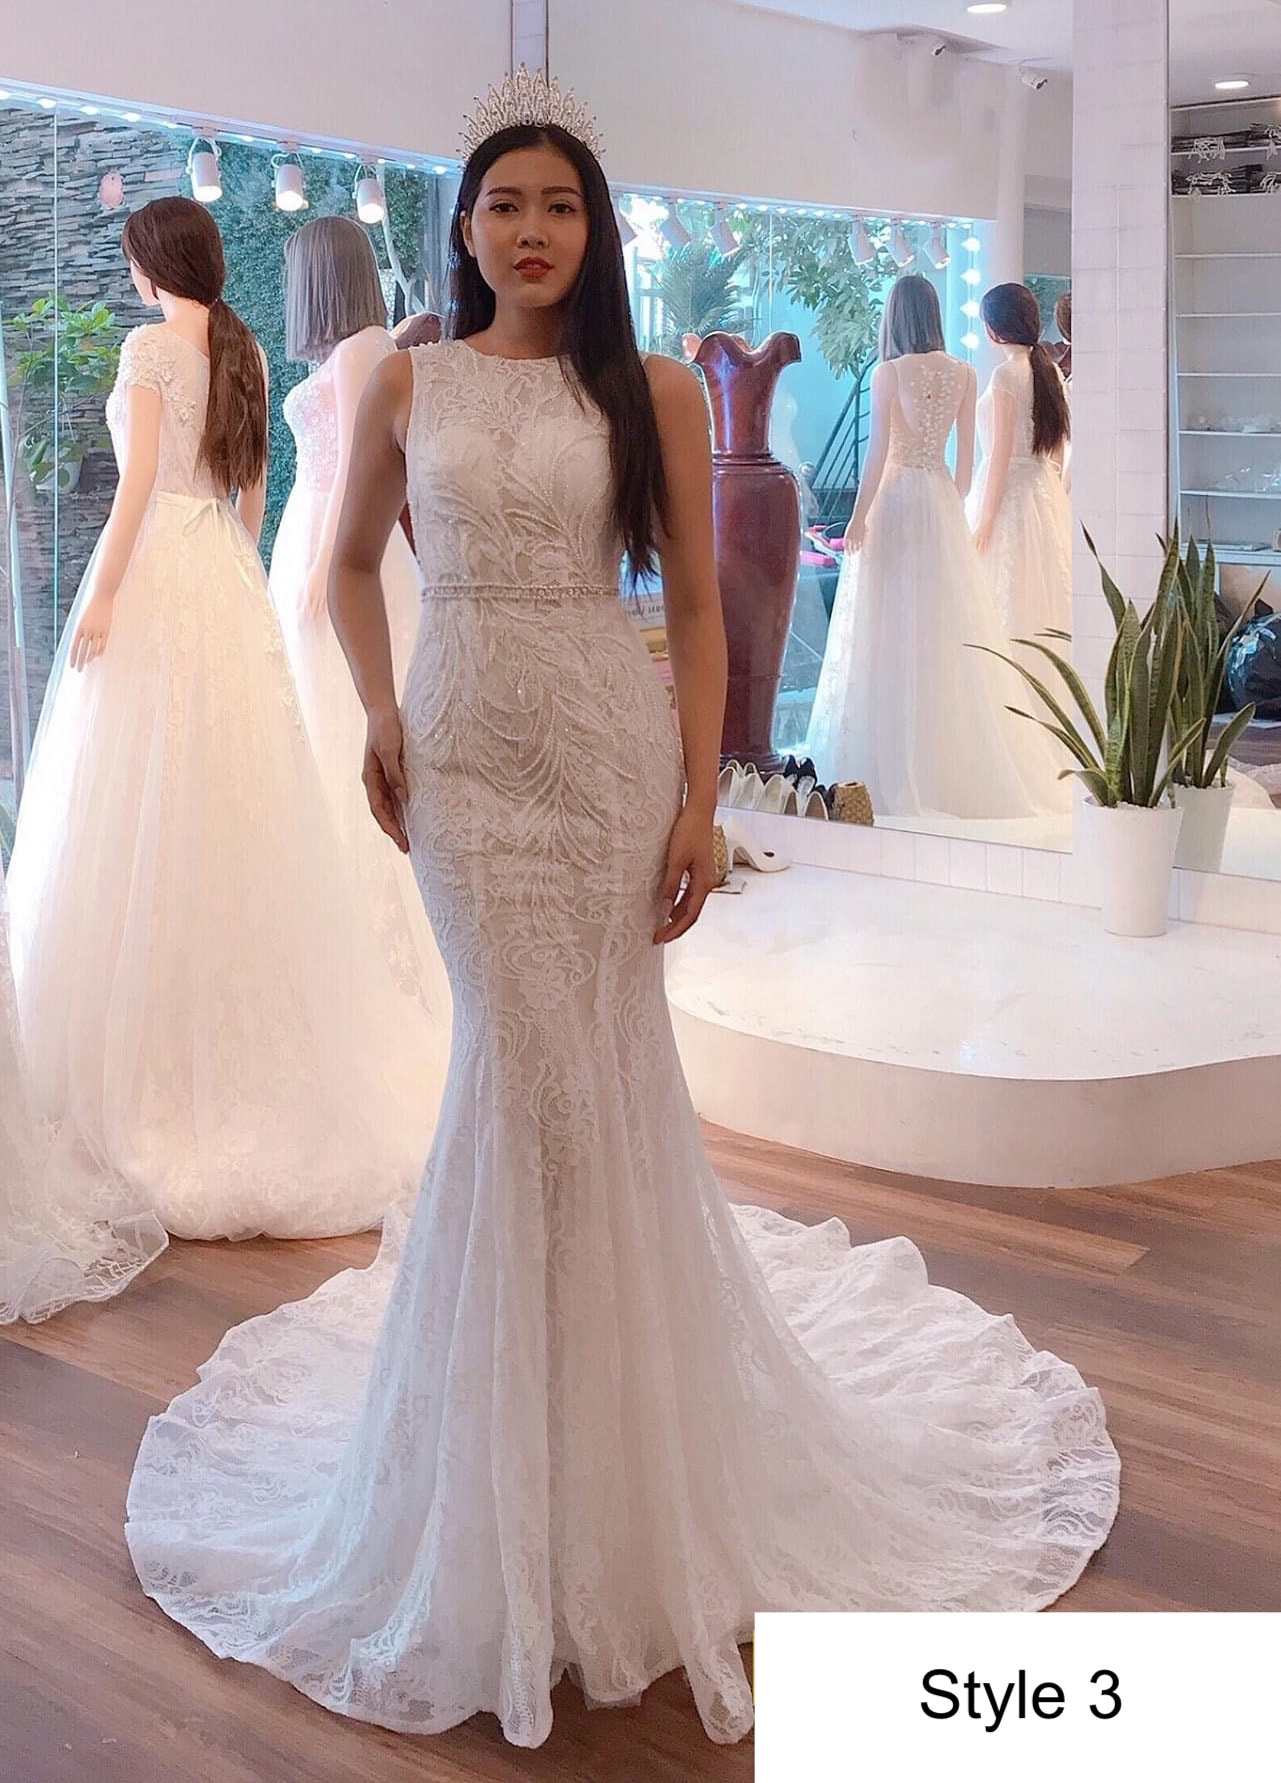 Summery sleeveless white lace mermaid wedding dress with